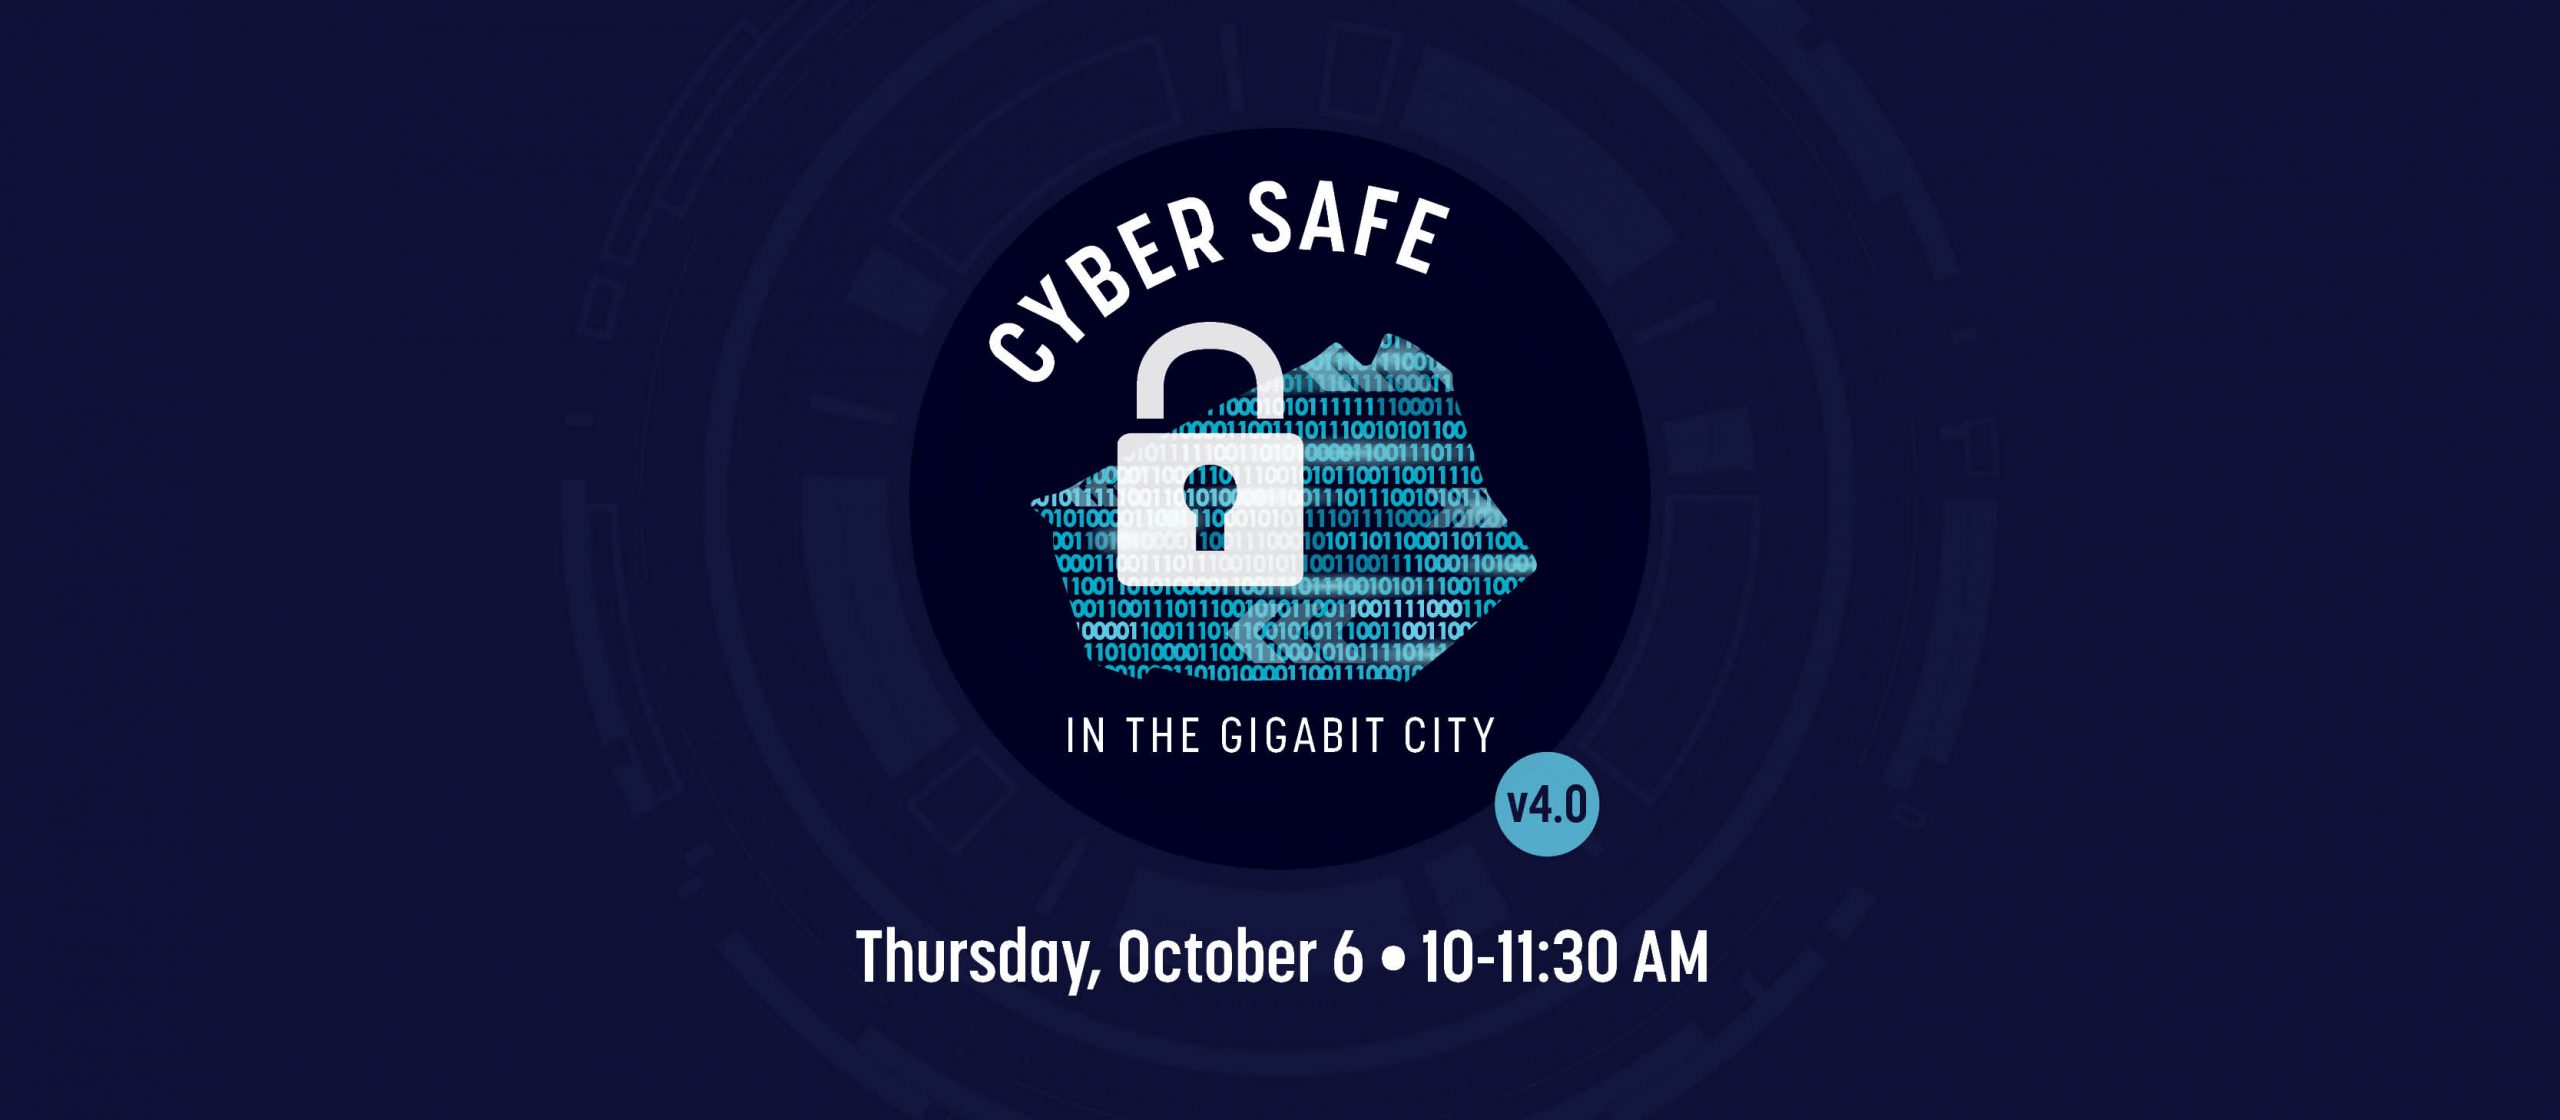 Cyber Safe in the Gigabit City v4.0, Thursday, October 6, 10-11:30 AM